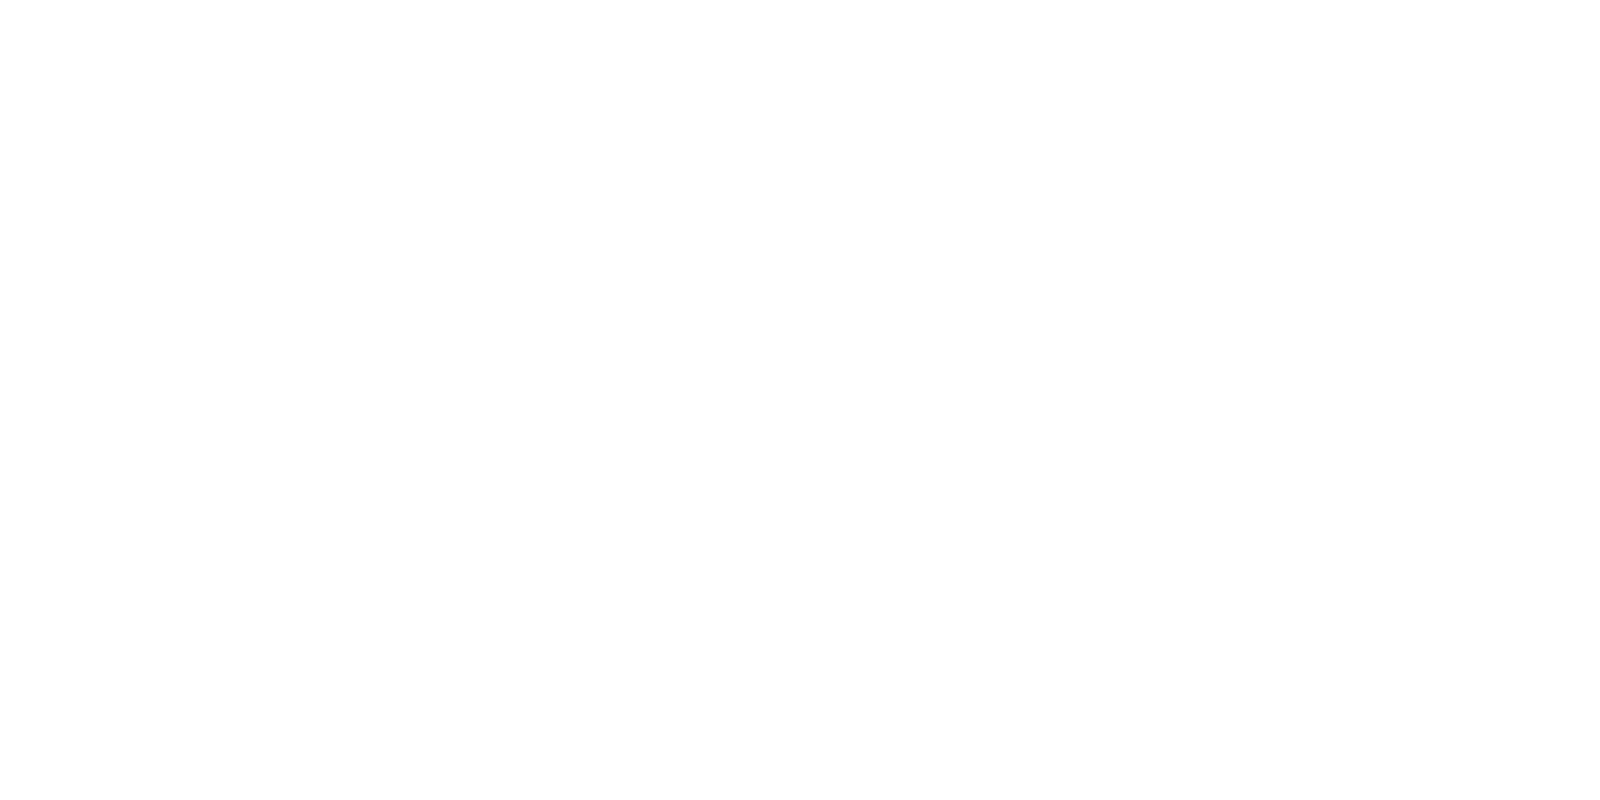 paper towns parent review